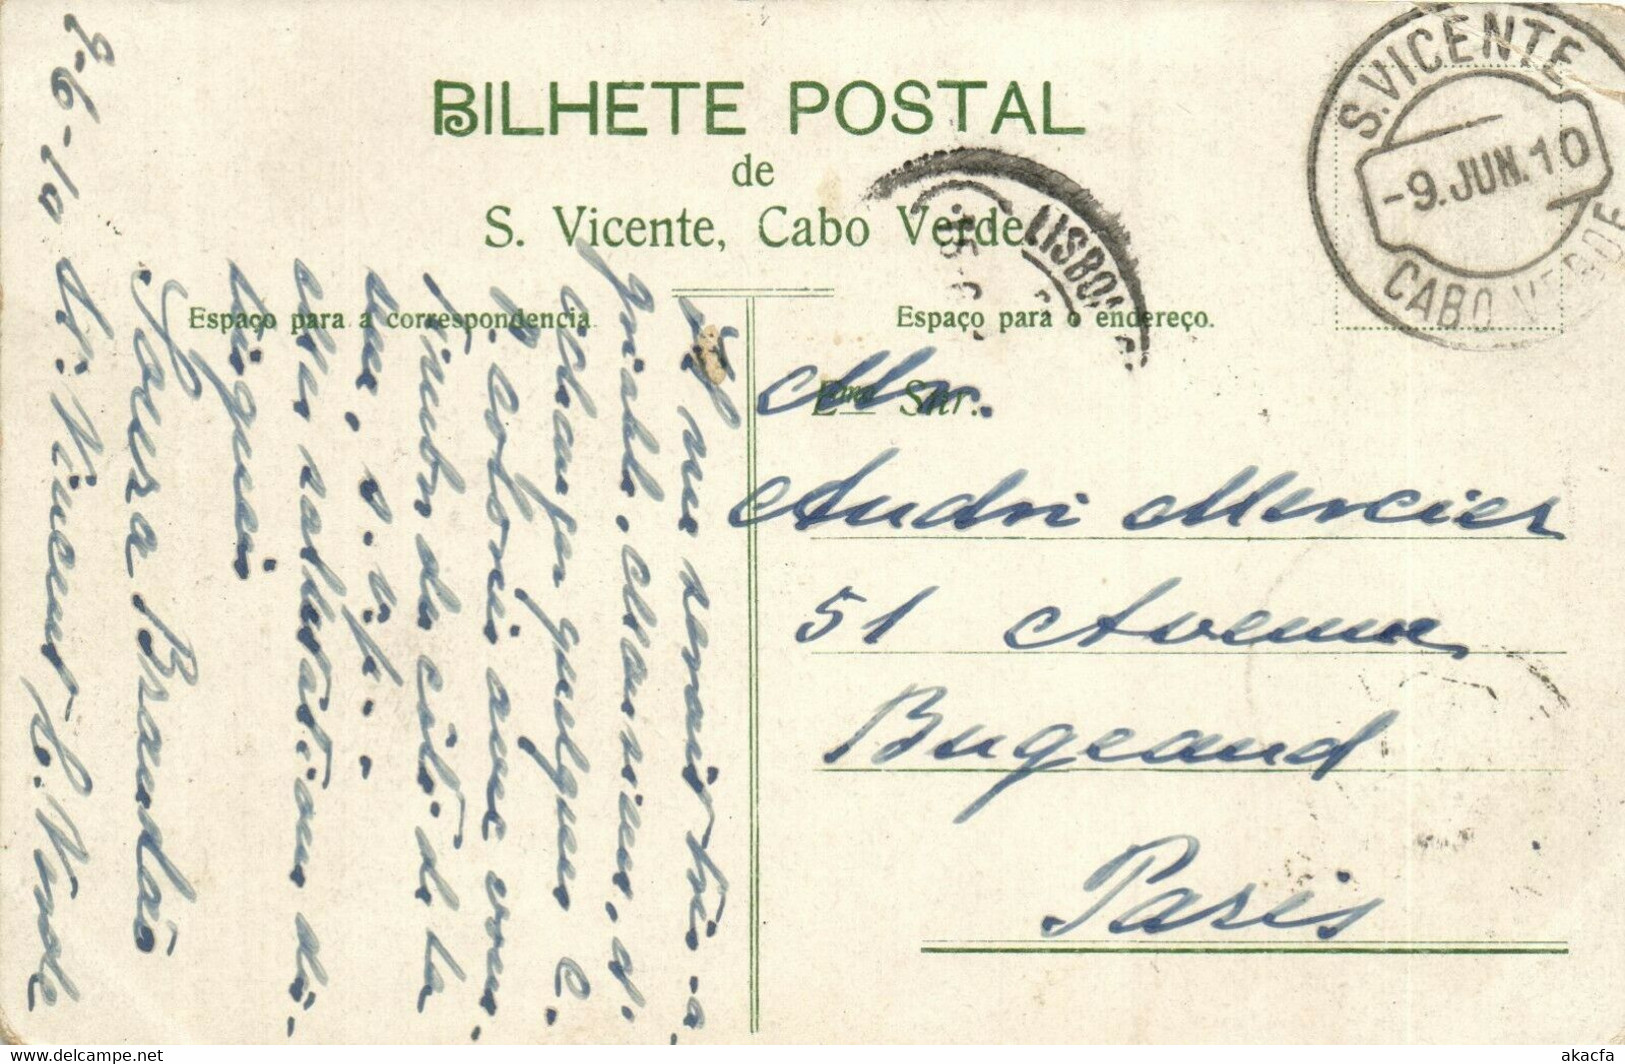 PC CPA CABO VERDE / CAPE VERDE, CIDADE DO MINDELLO, Vintage Postcard (b26727) - Cap Vert